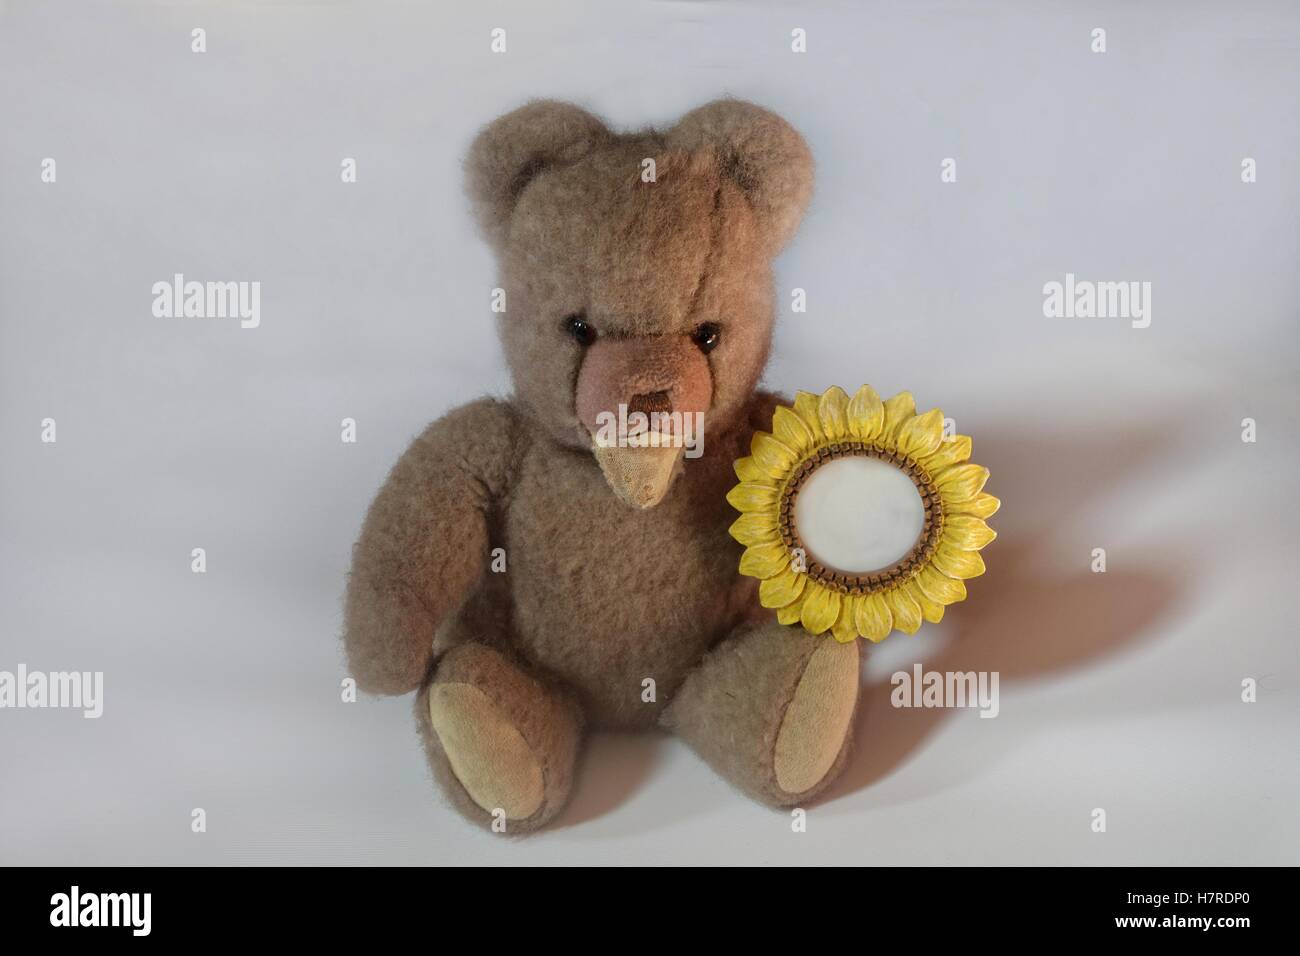 teddy bear holding a sunflower